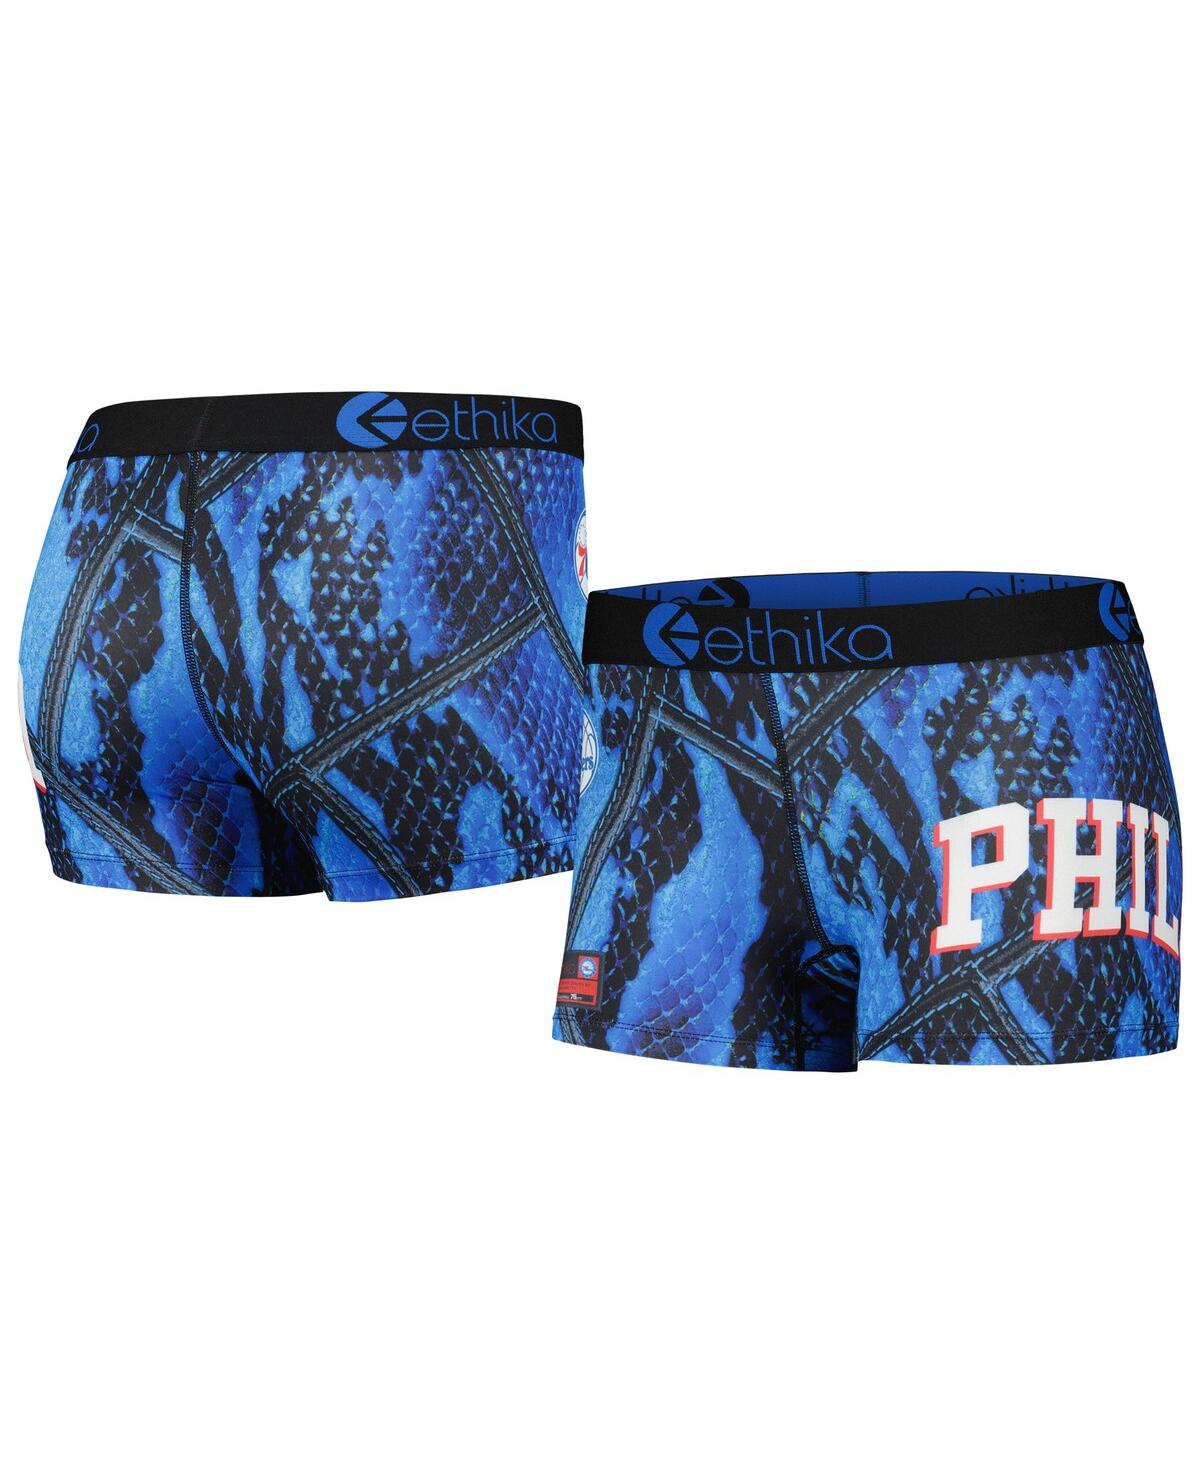 Ethika Women's  Royal Philadelphia 76ers Staple Underwear